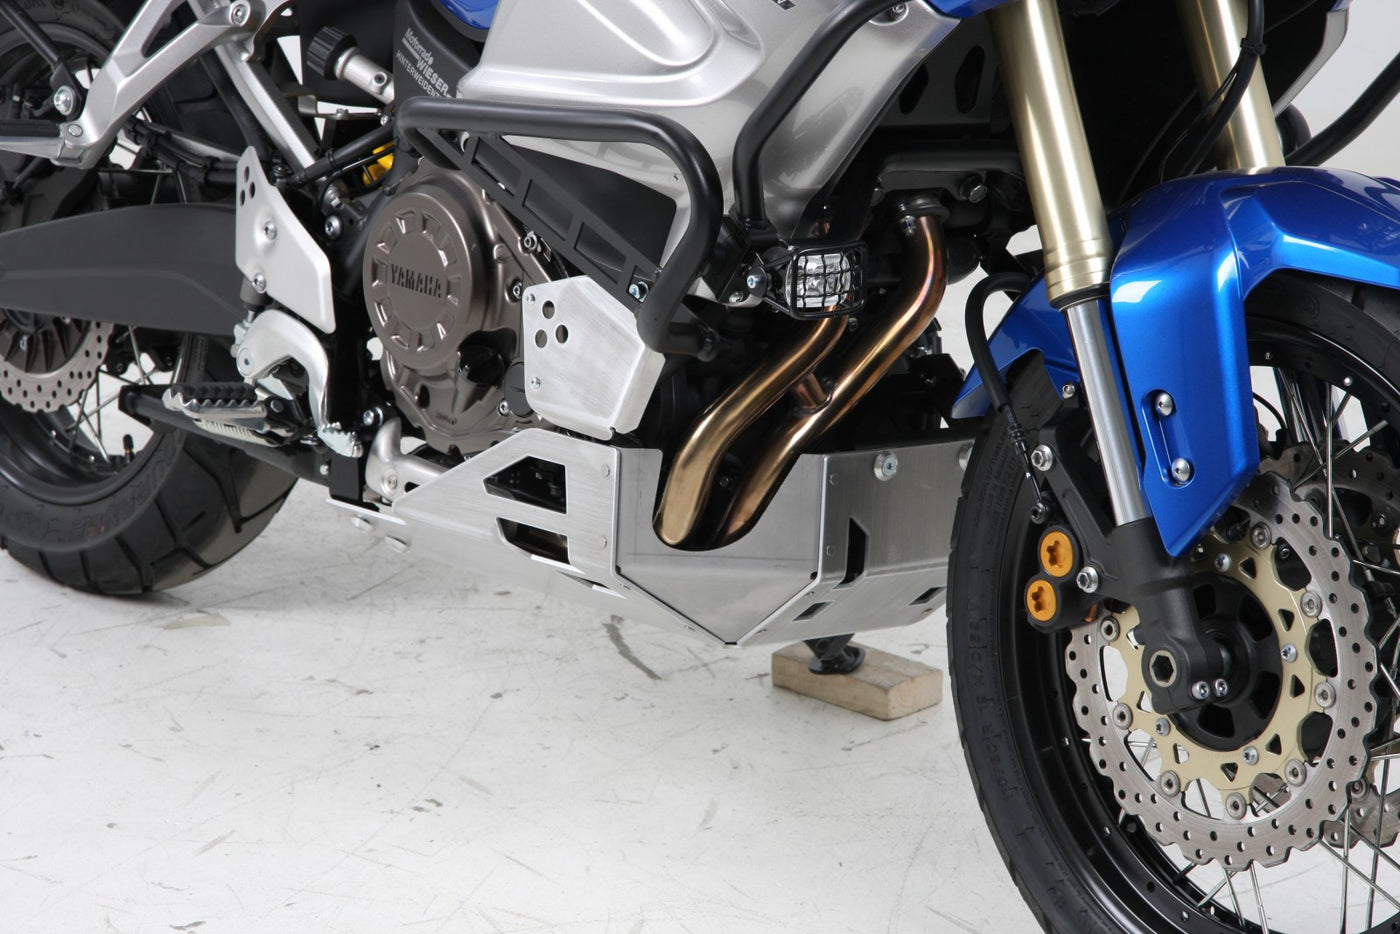 Engine Protection Bar for Yamaha XTZ1200 Super Ténéré (2014-2020)